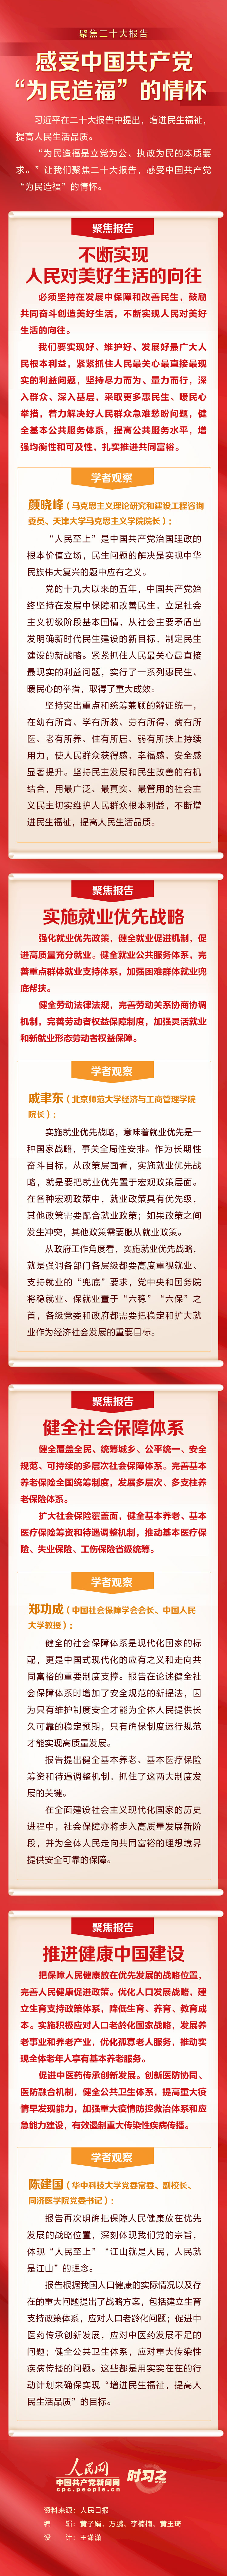 聚焦二十大报告——感受中国共产党“为民造福”的情怀(图1)